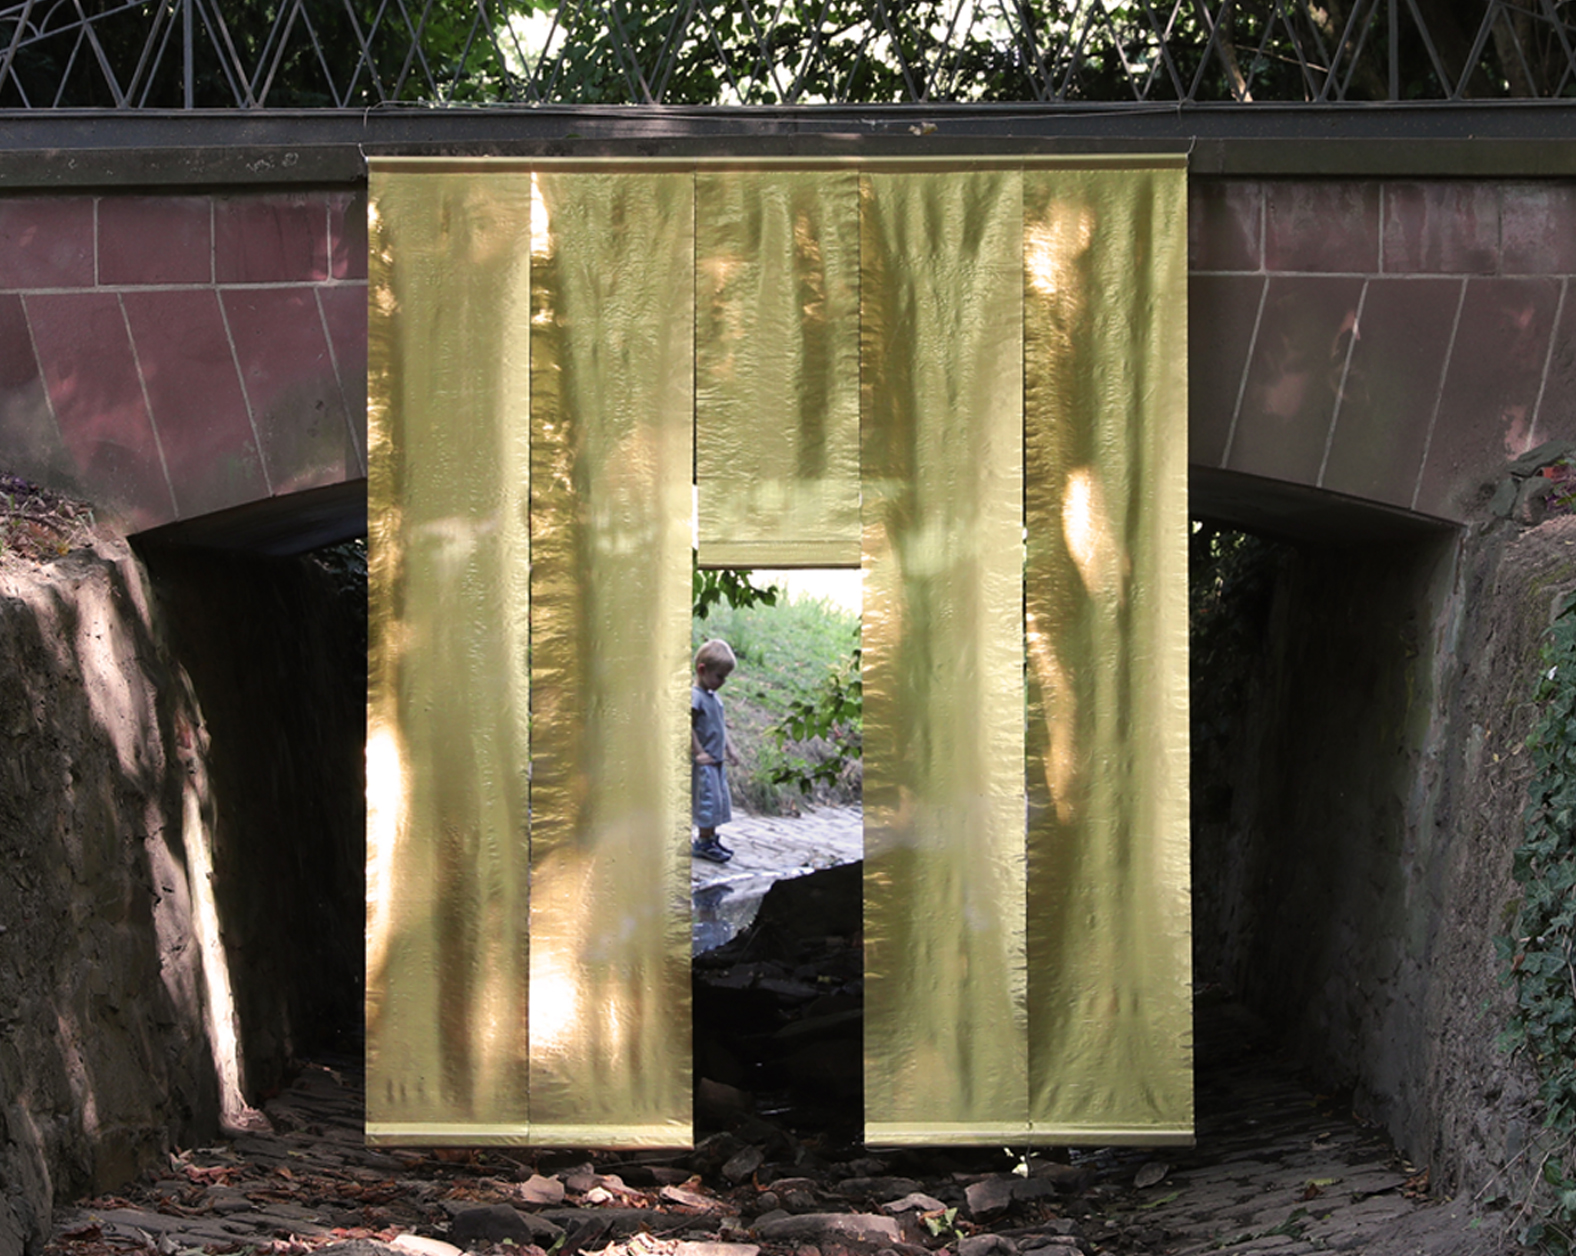 Tempio dell’acqua II  – <br>
Installation im Biebricher Schlosspark im Rahmen des Art Festivals „Poesie im Park“, Wiesbaden, am Bachverlauf des Mosbaches, Metallfasergewebe, Holz, Aluminium, 2022